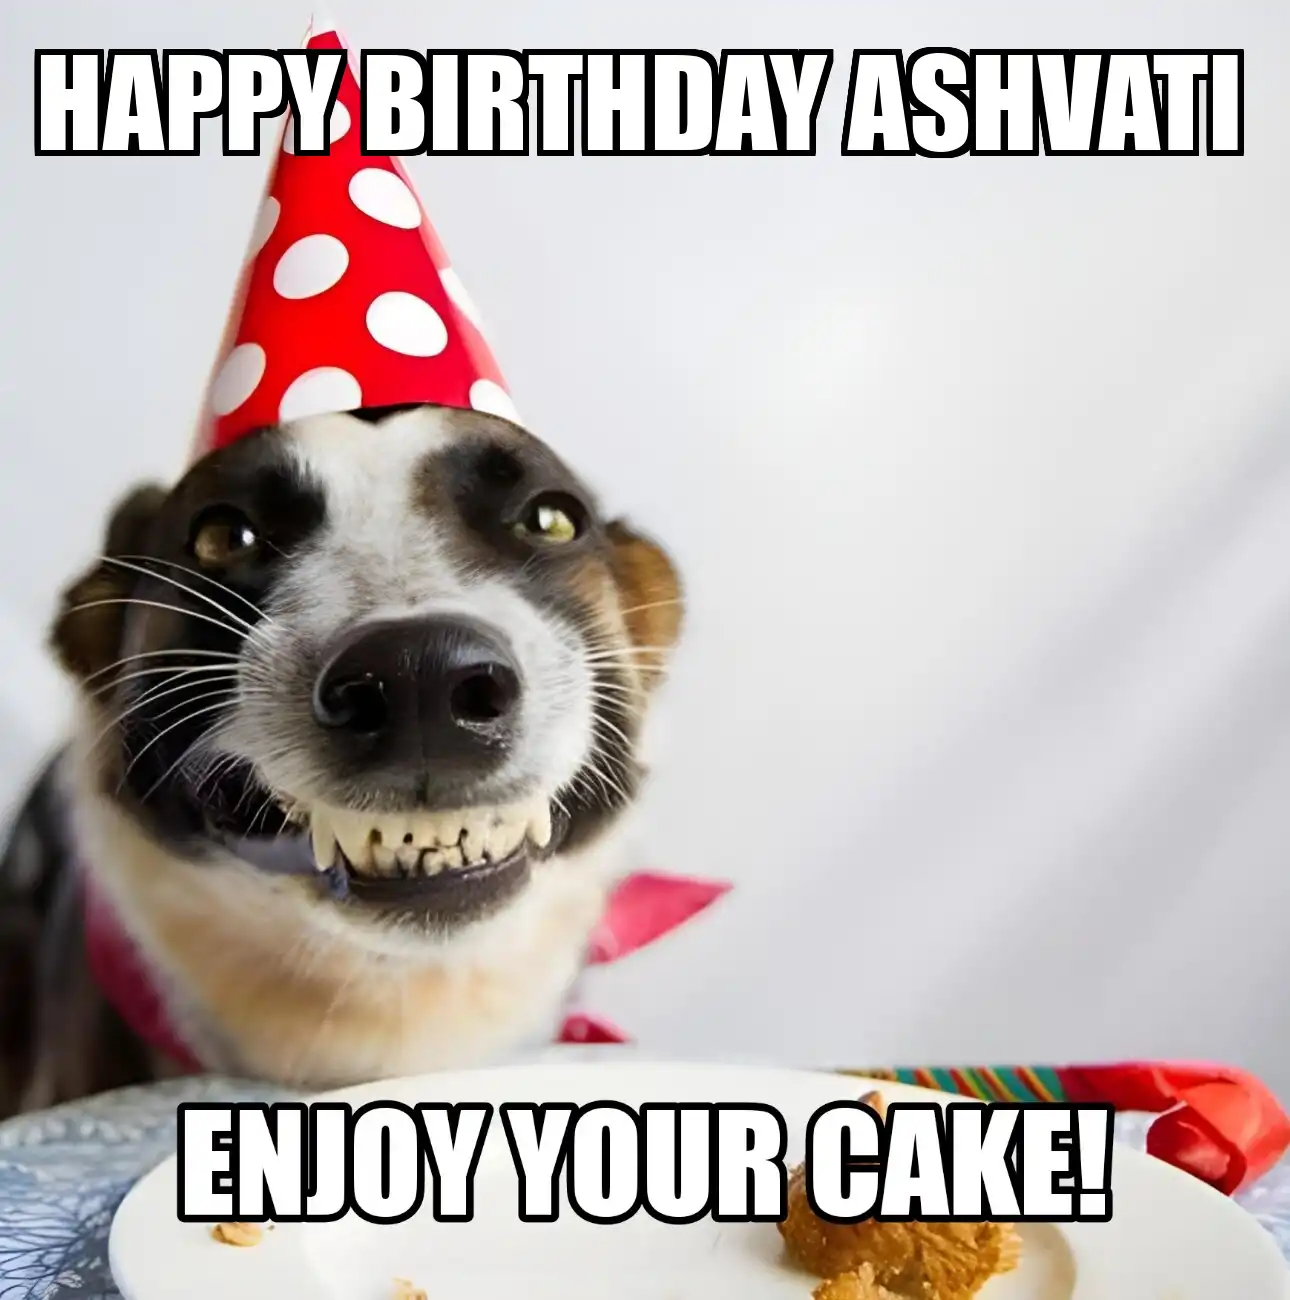 Happy Birthday Ashvati Enjoy Your Cake Dog Meme